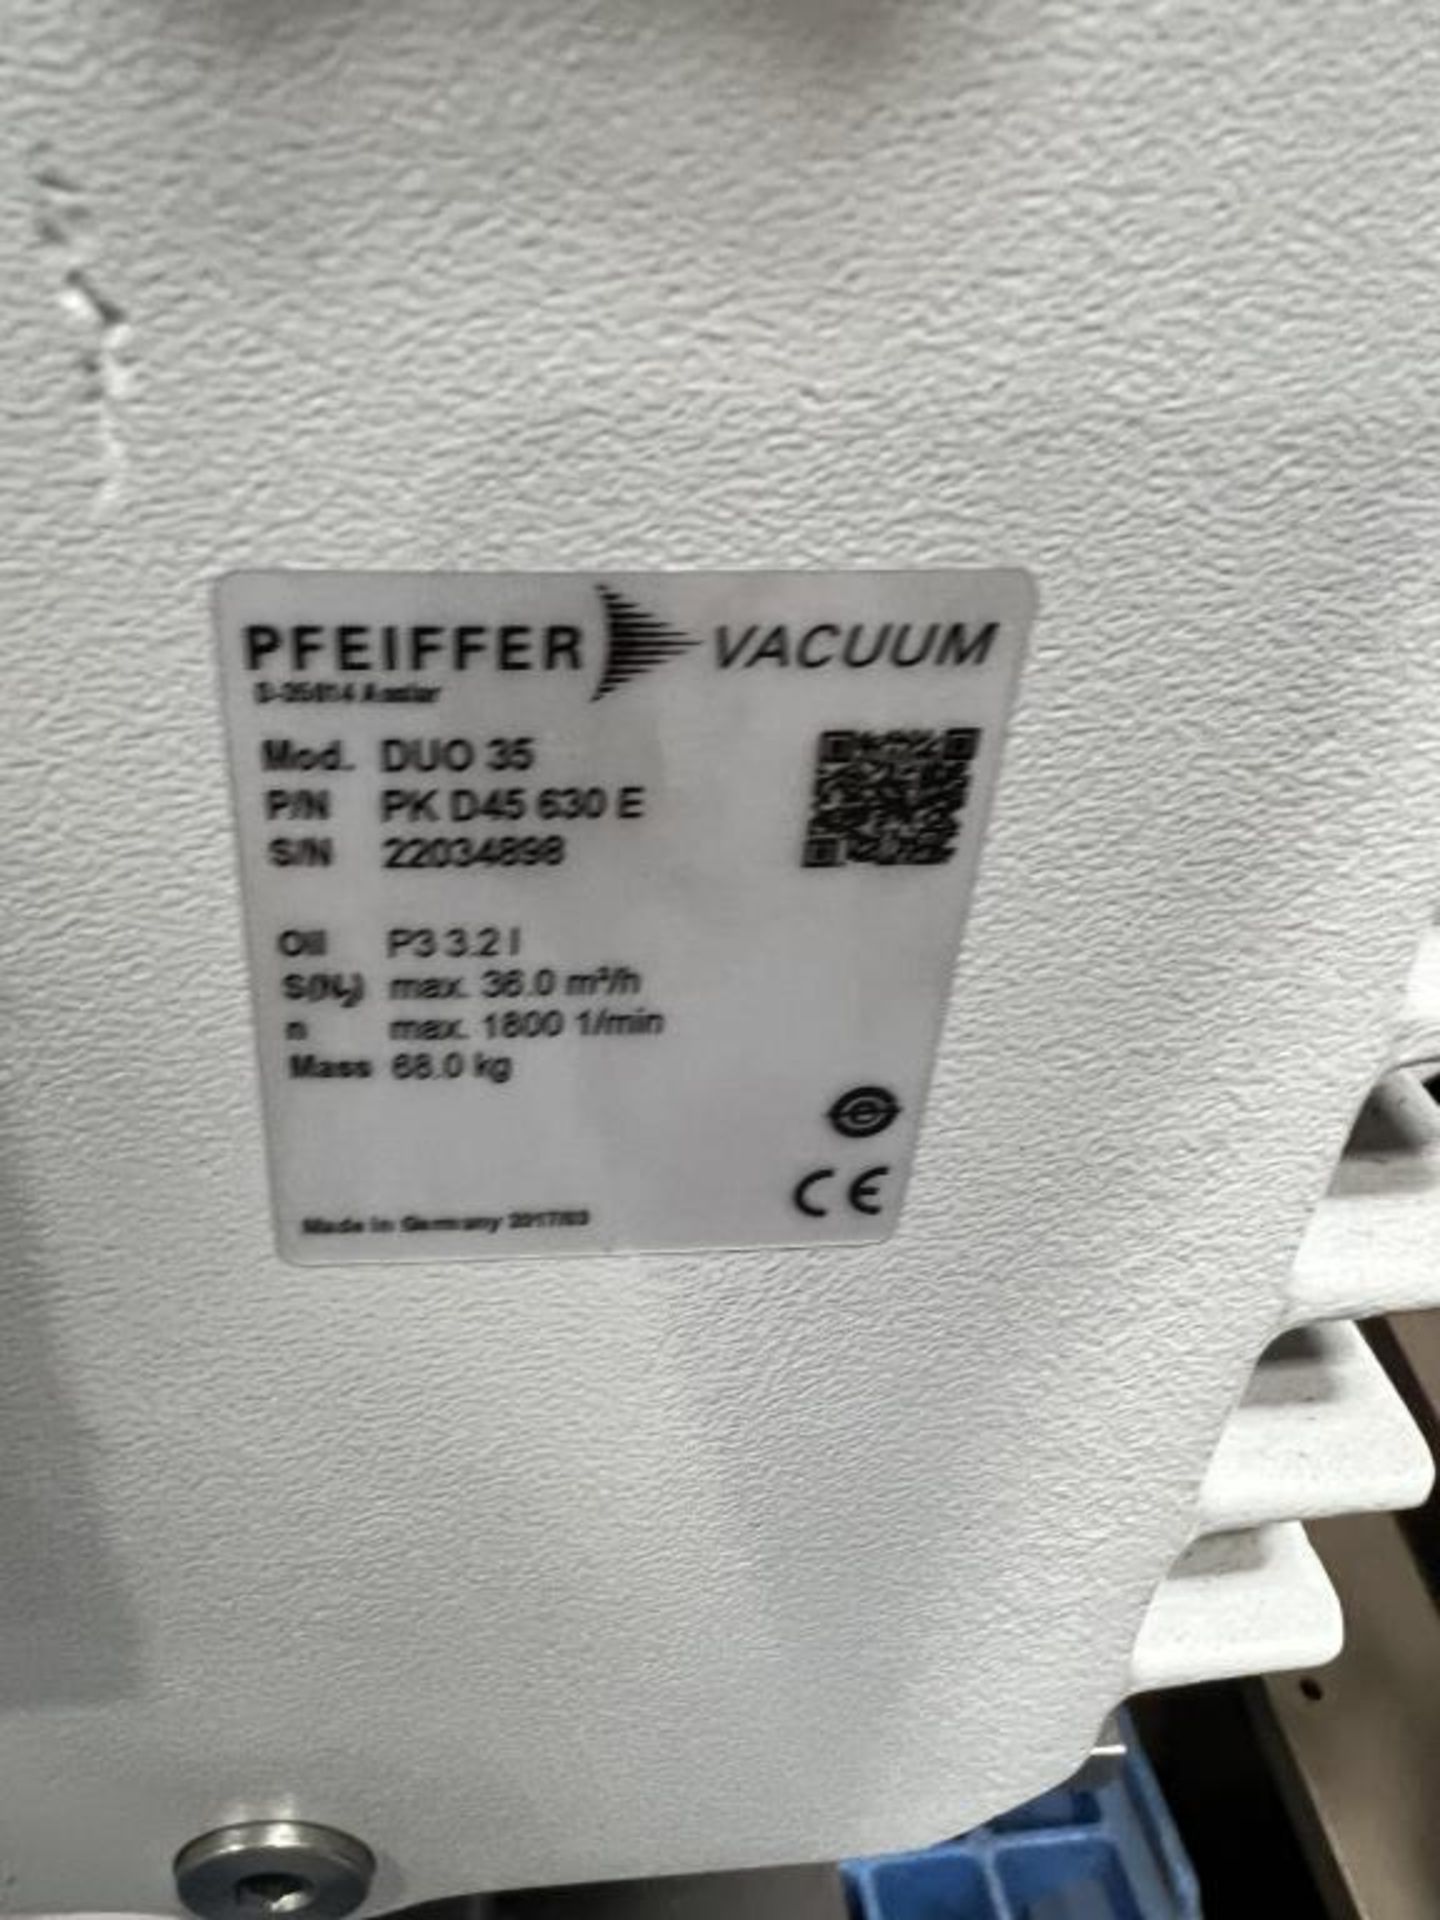 Pfeiffer Vacuum Pump - Image 3 of 4